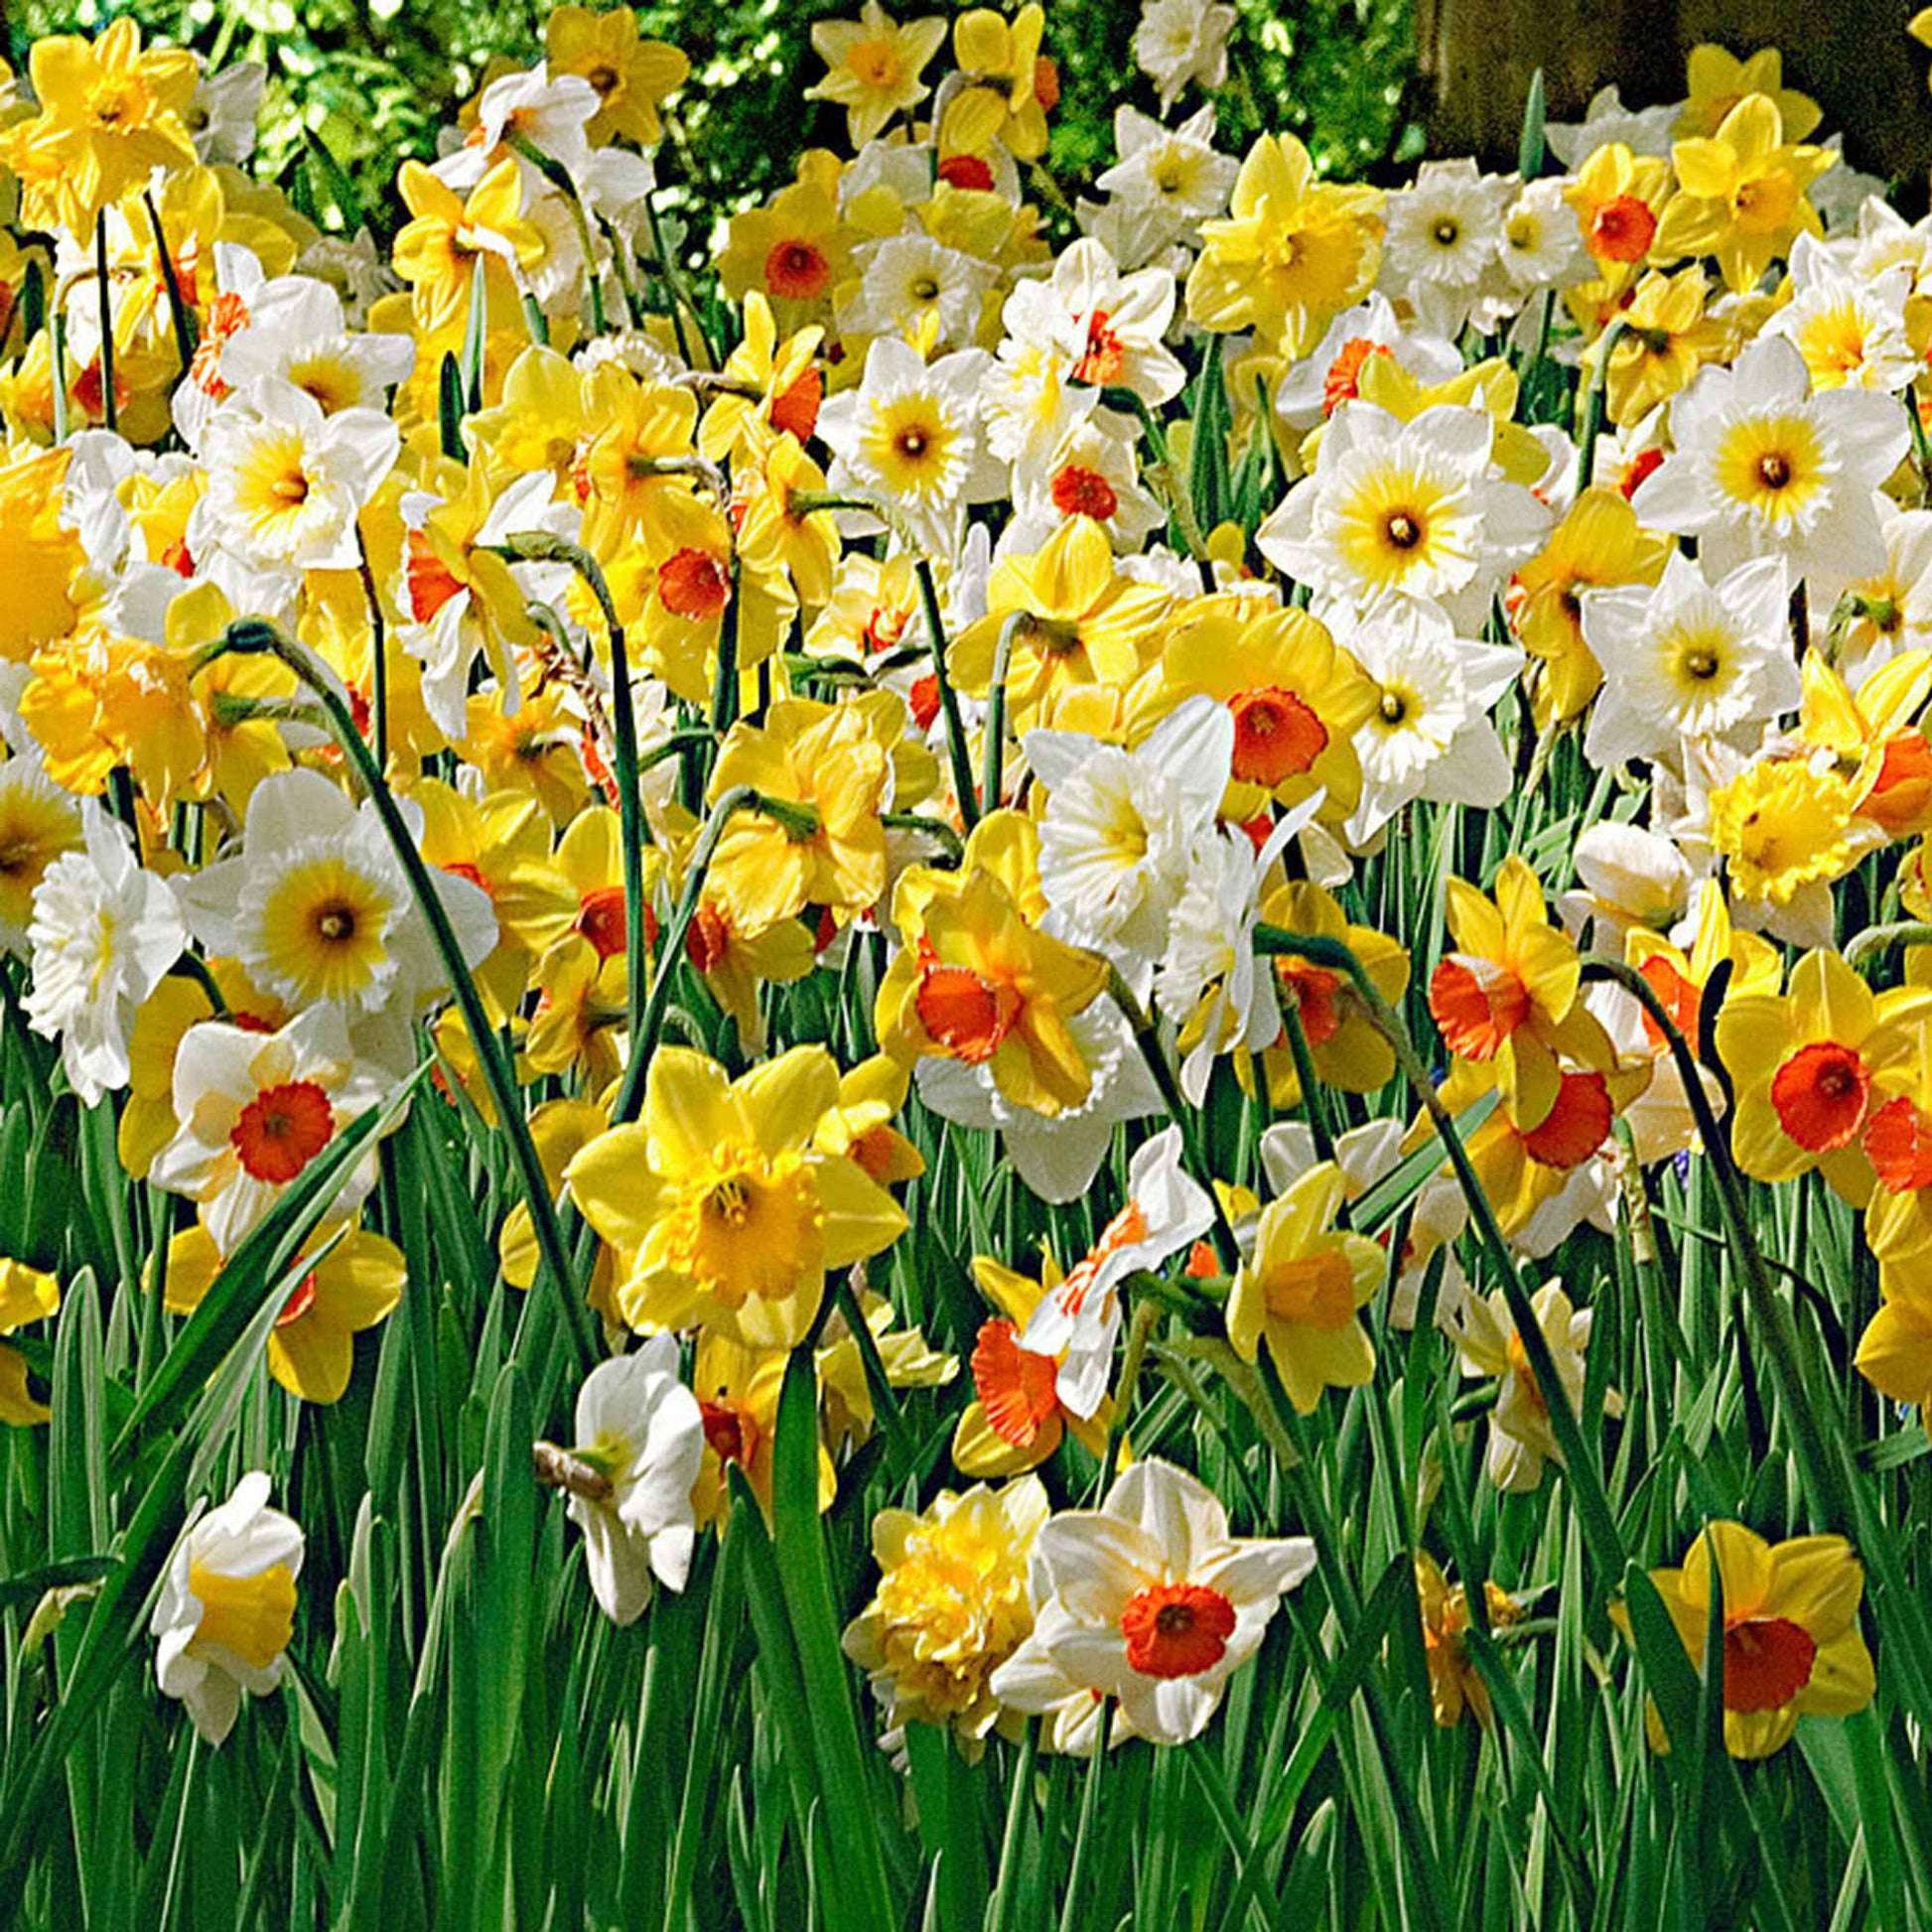 25x Narcissen Narcissus - Mix 'Rich Garden' geel-wit-oranje - Winterhard - Alle populaire bloembollen